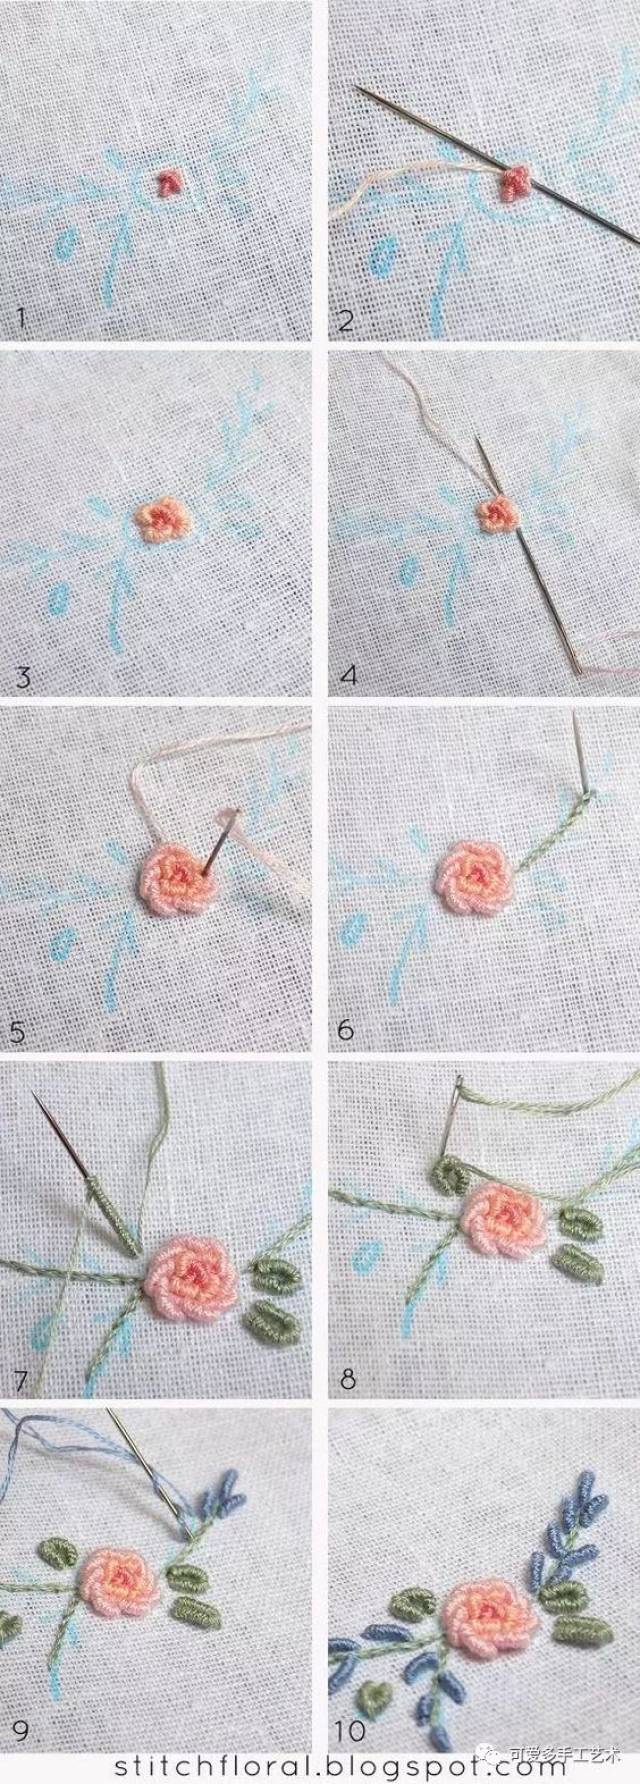 只需几分钟就学会了花和叶子的针法刺绣,绣起来简直要美爆了!(附教程)